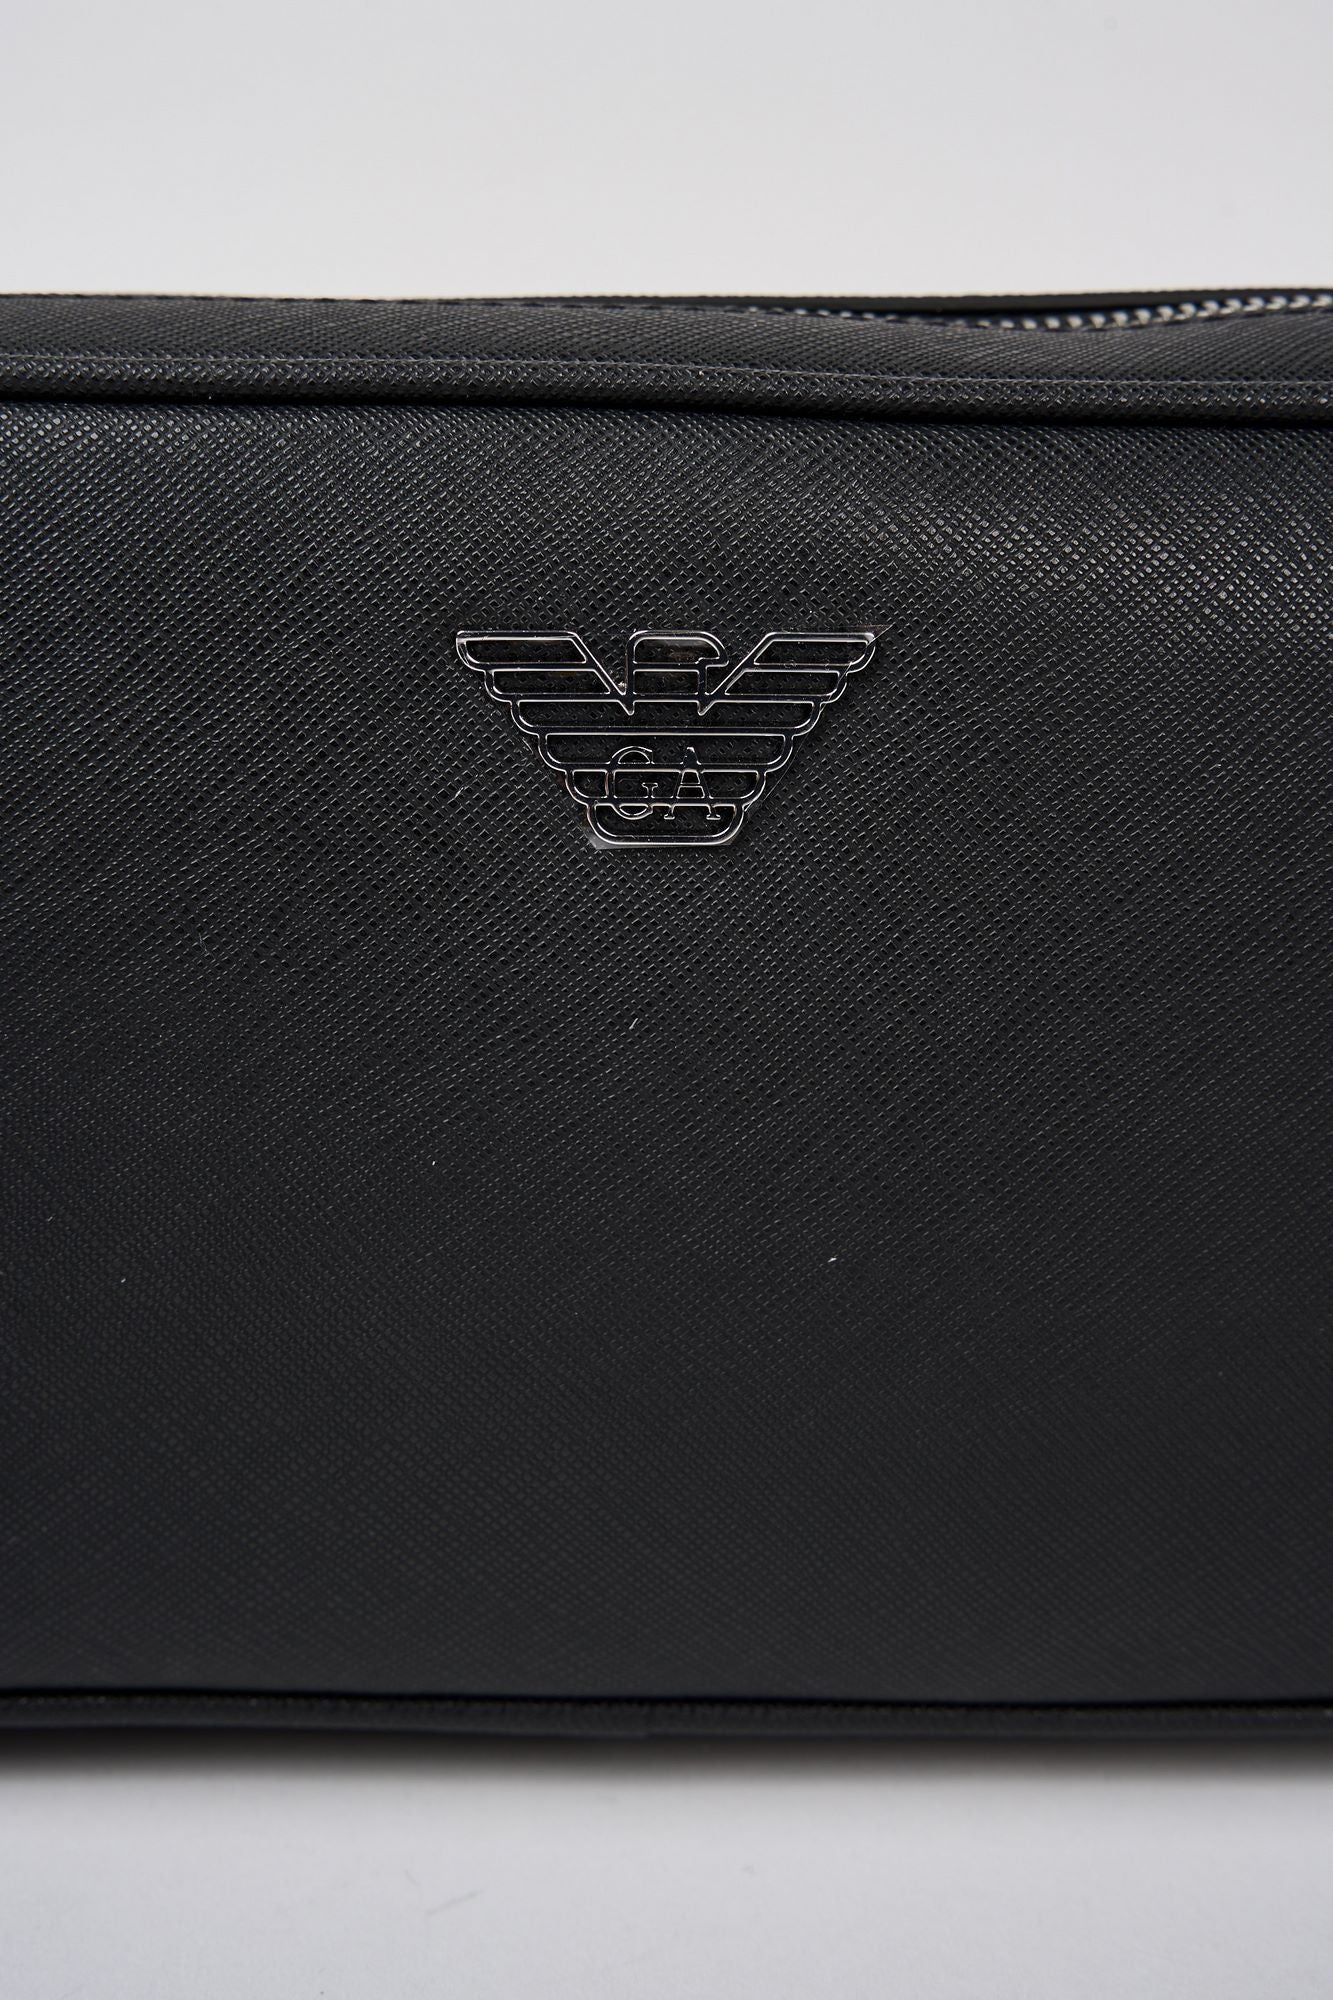 Emporio Armani Regenerated Leather Saffiano Beauty Case Black-4